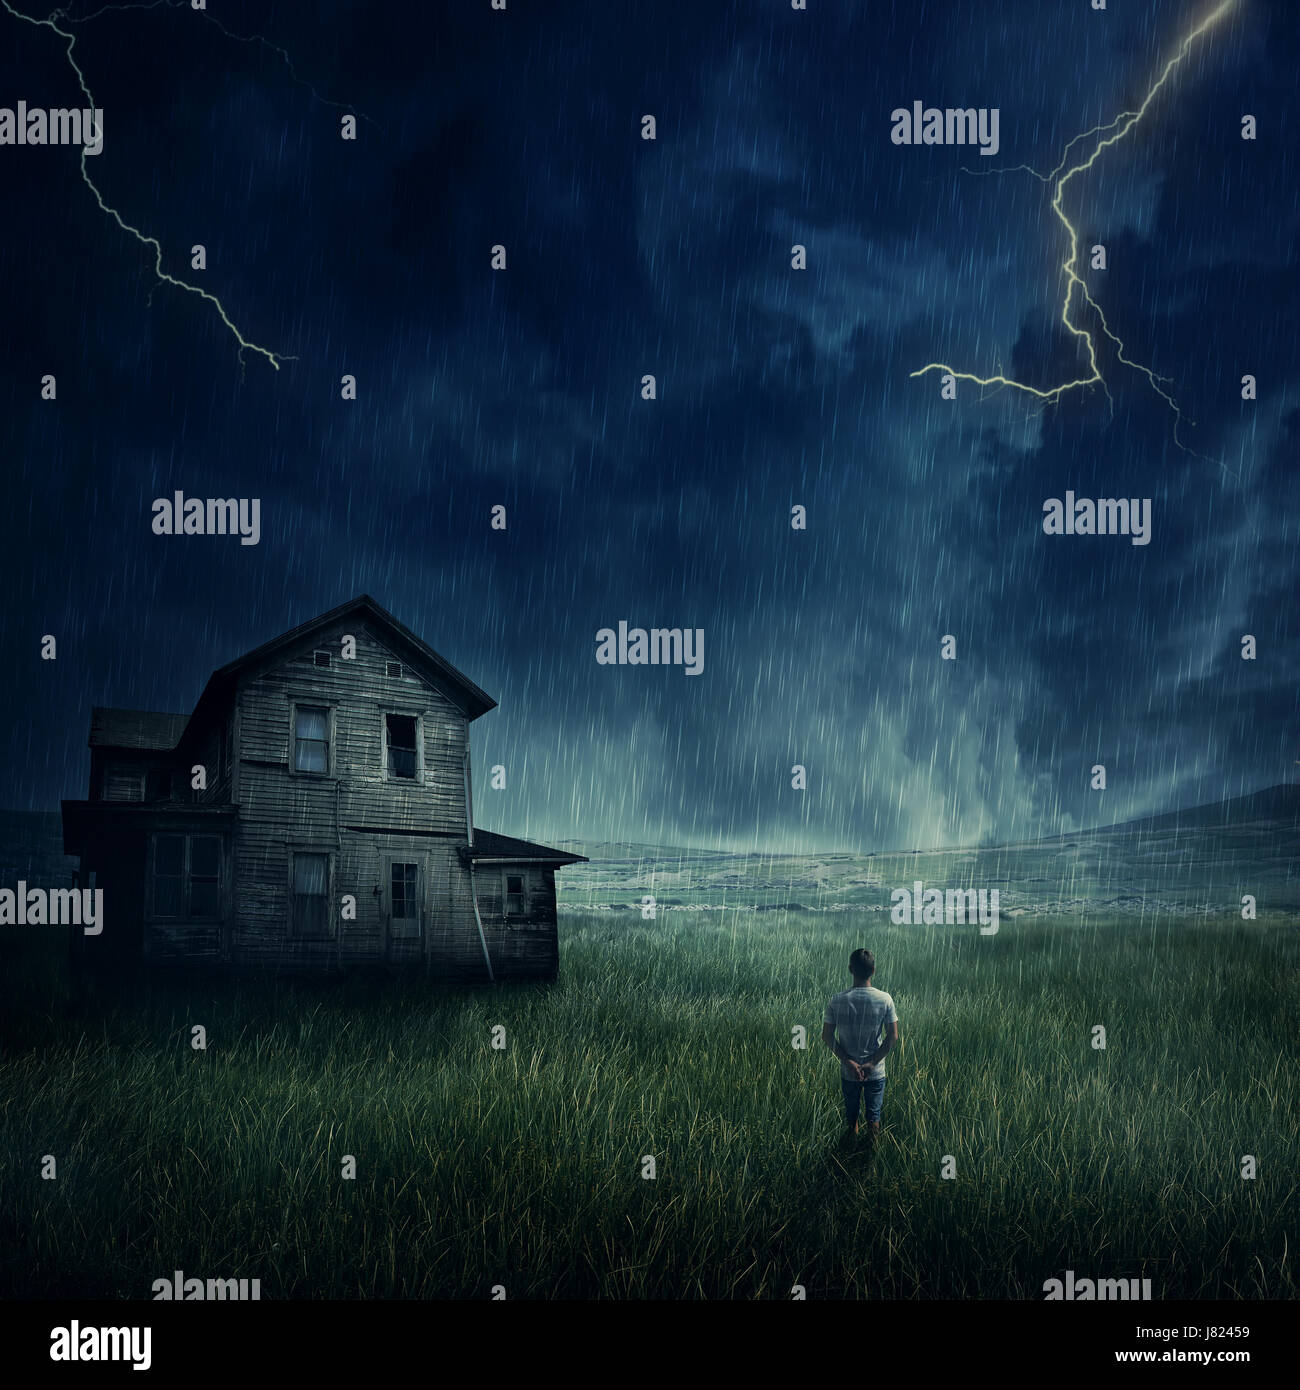 Spooky paisaje como un joven muchacho caminando en la pradera mirar un fantasma, casa embrujada por debajo de un oscuro cielo tormentoso. Foto de stock